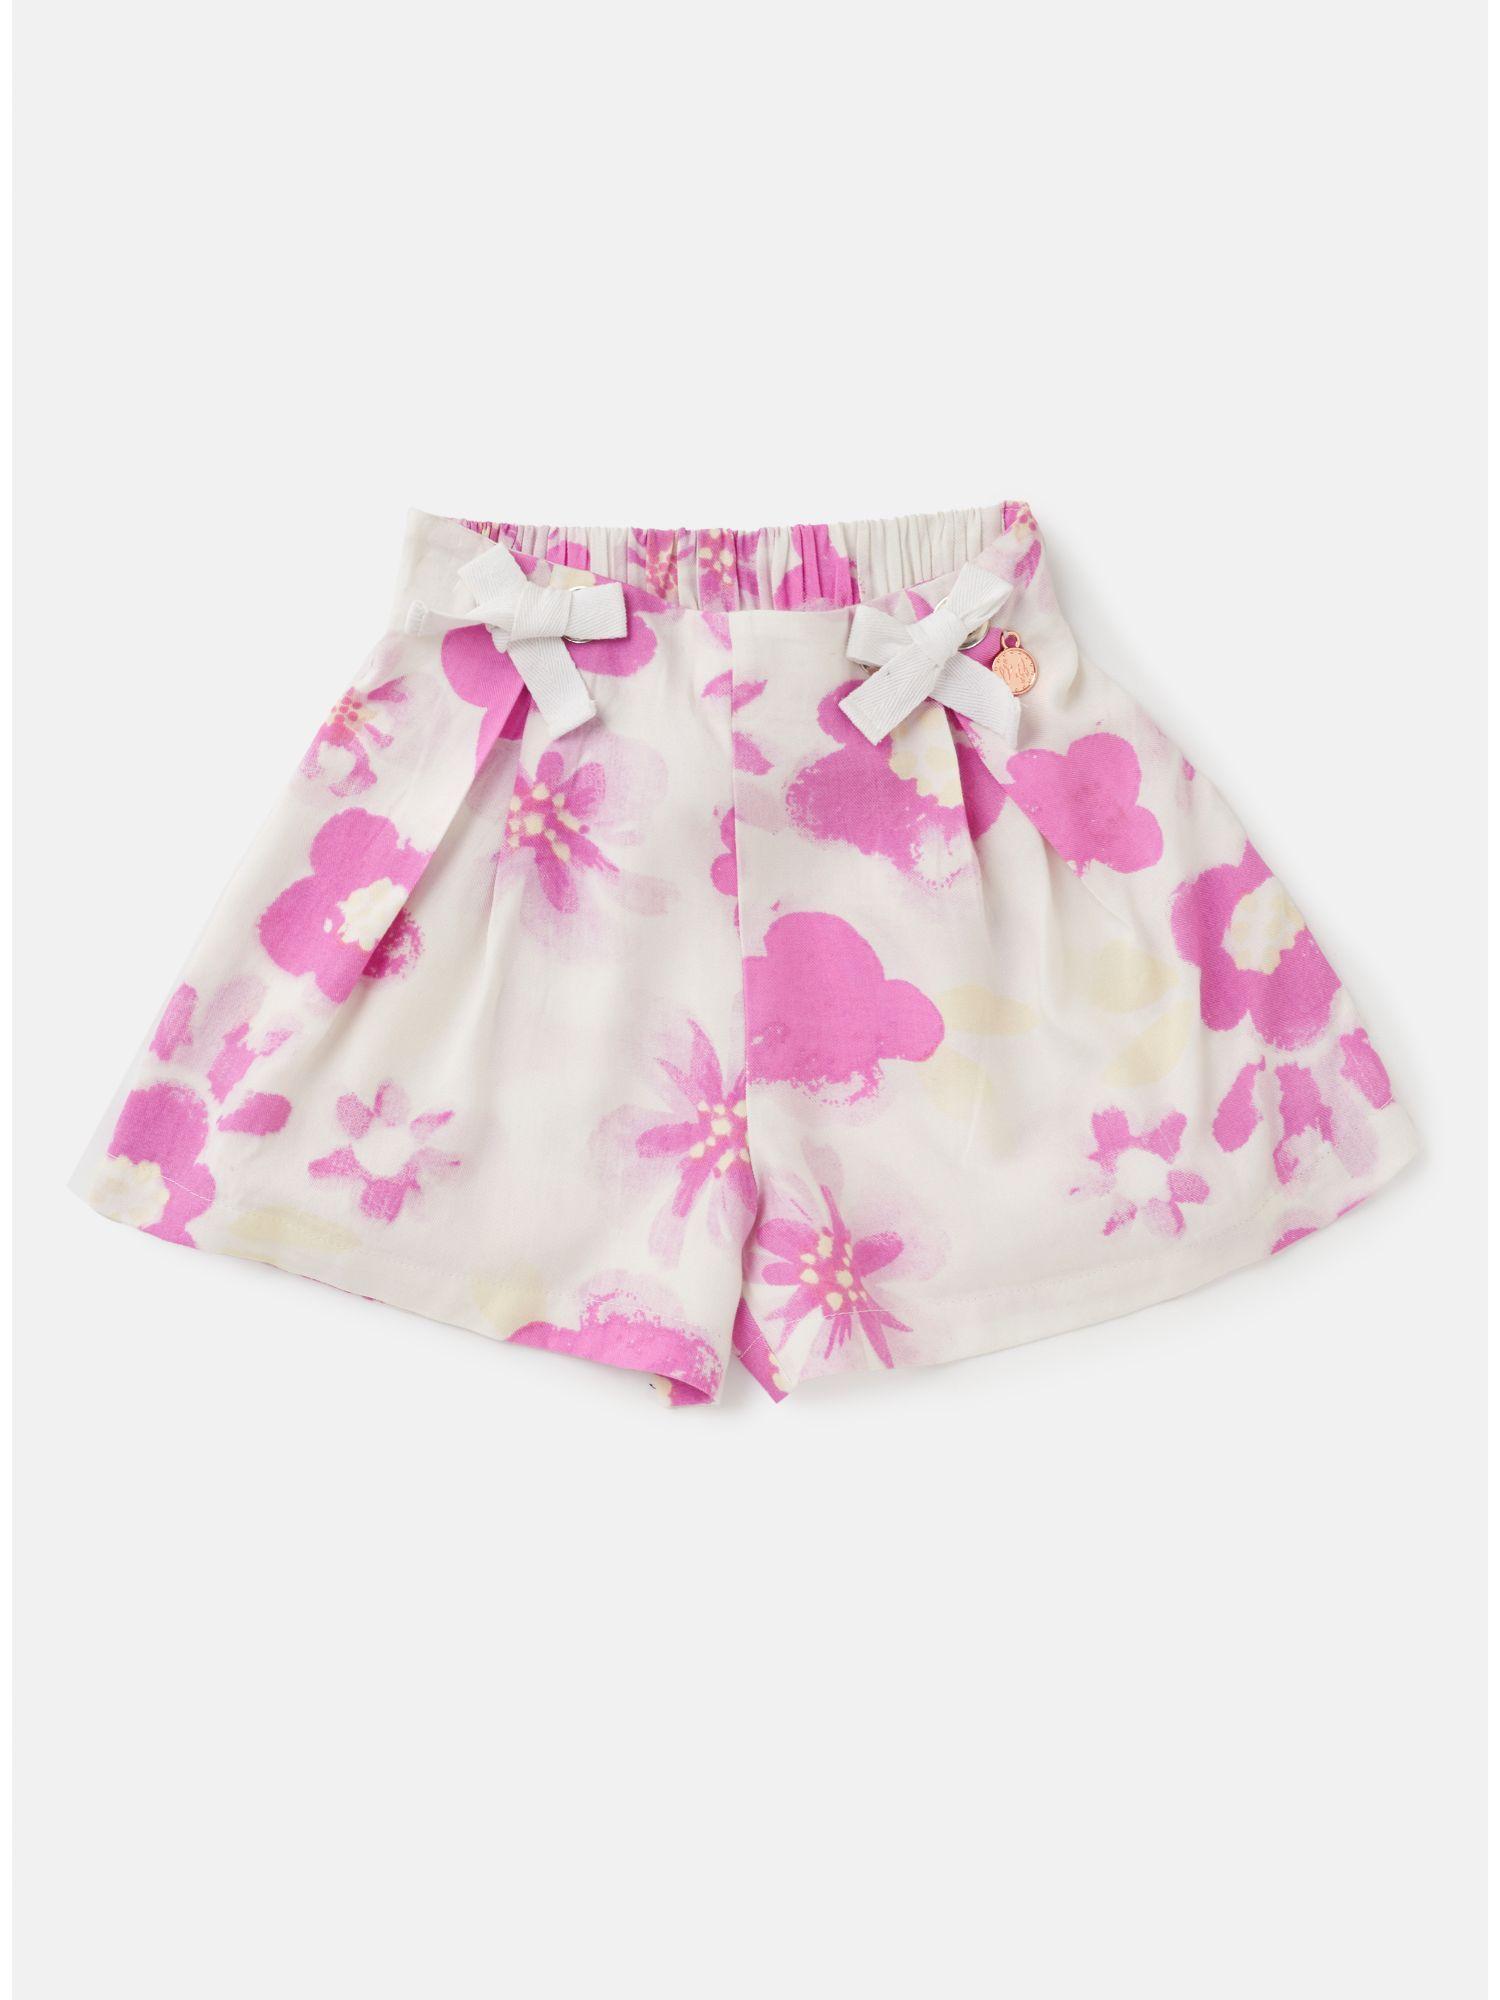 printed pink shorts